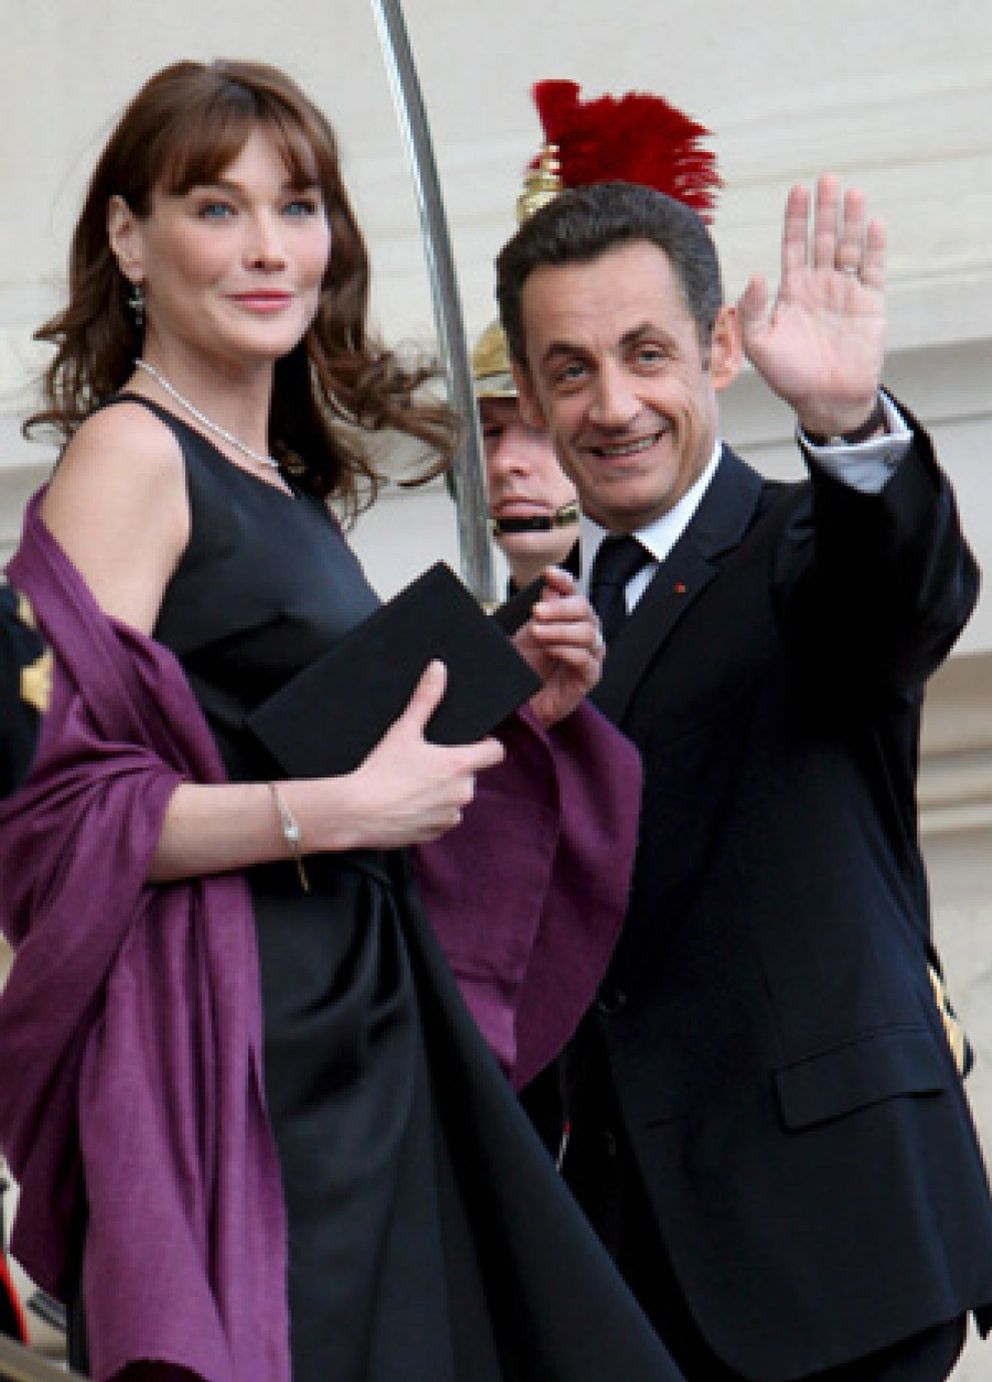 Foto: Las insinuaciones picantes de Bruni y Sarkozy